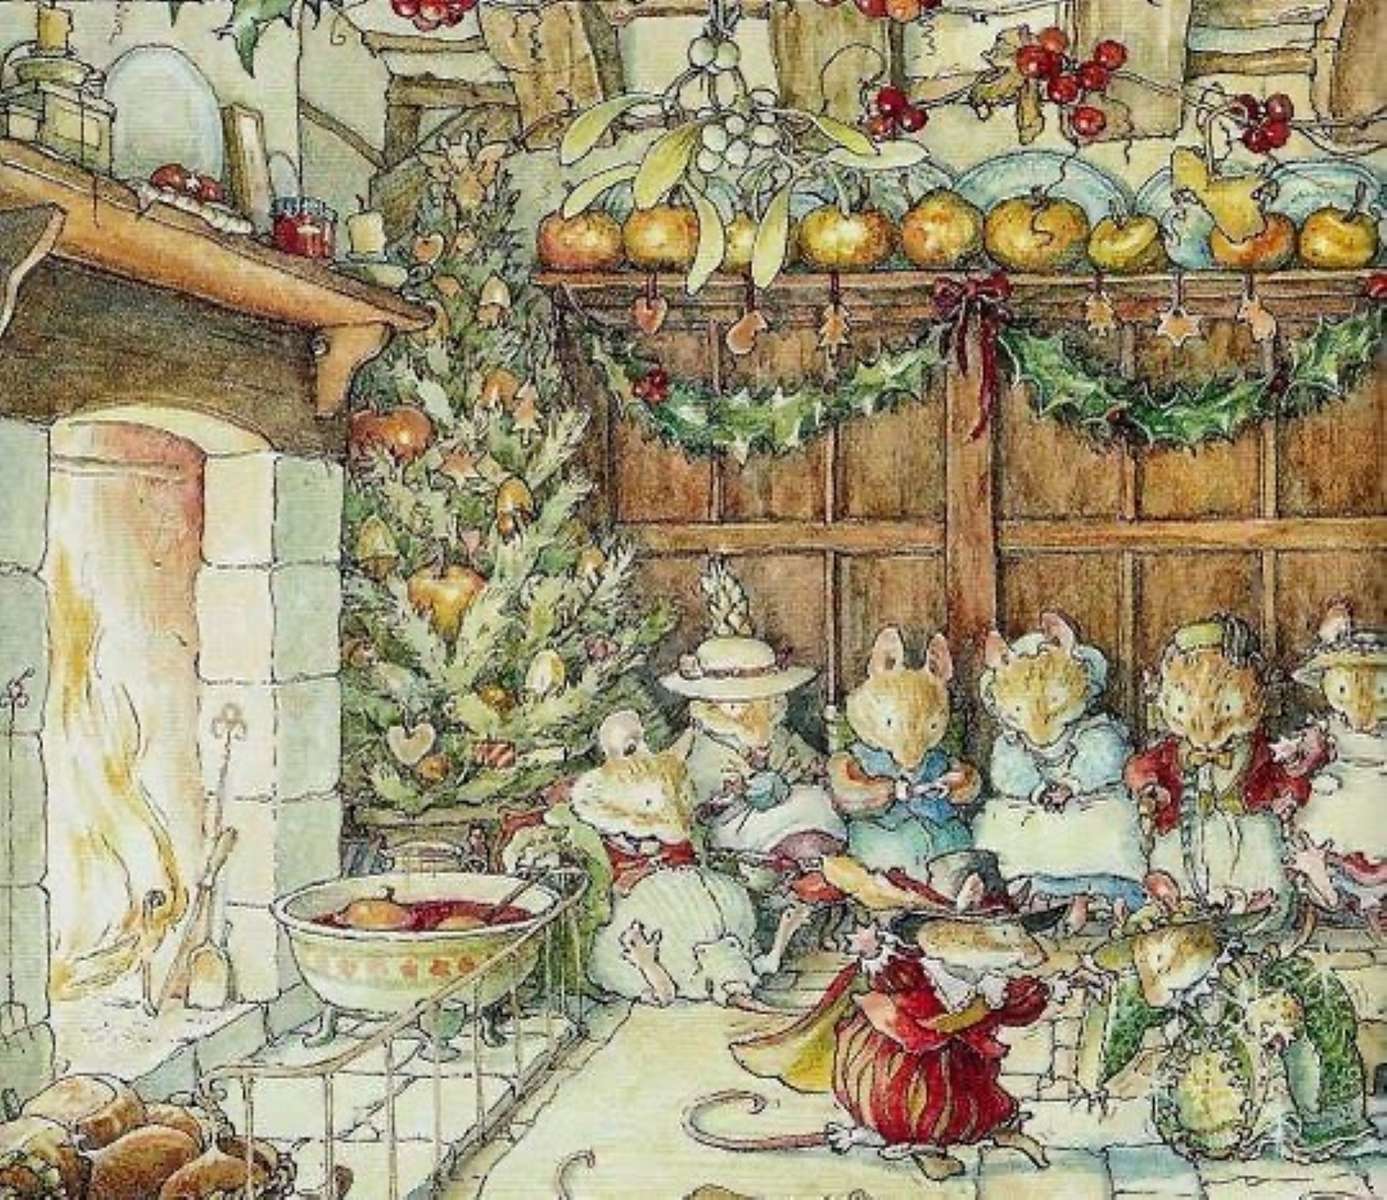 τα ποντίκια του παρελθόντος γιορτάζουν τα Χριστούγεννα online παζλ